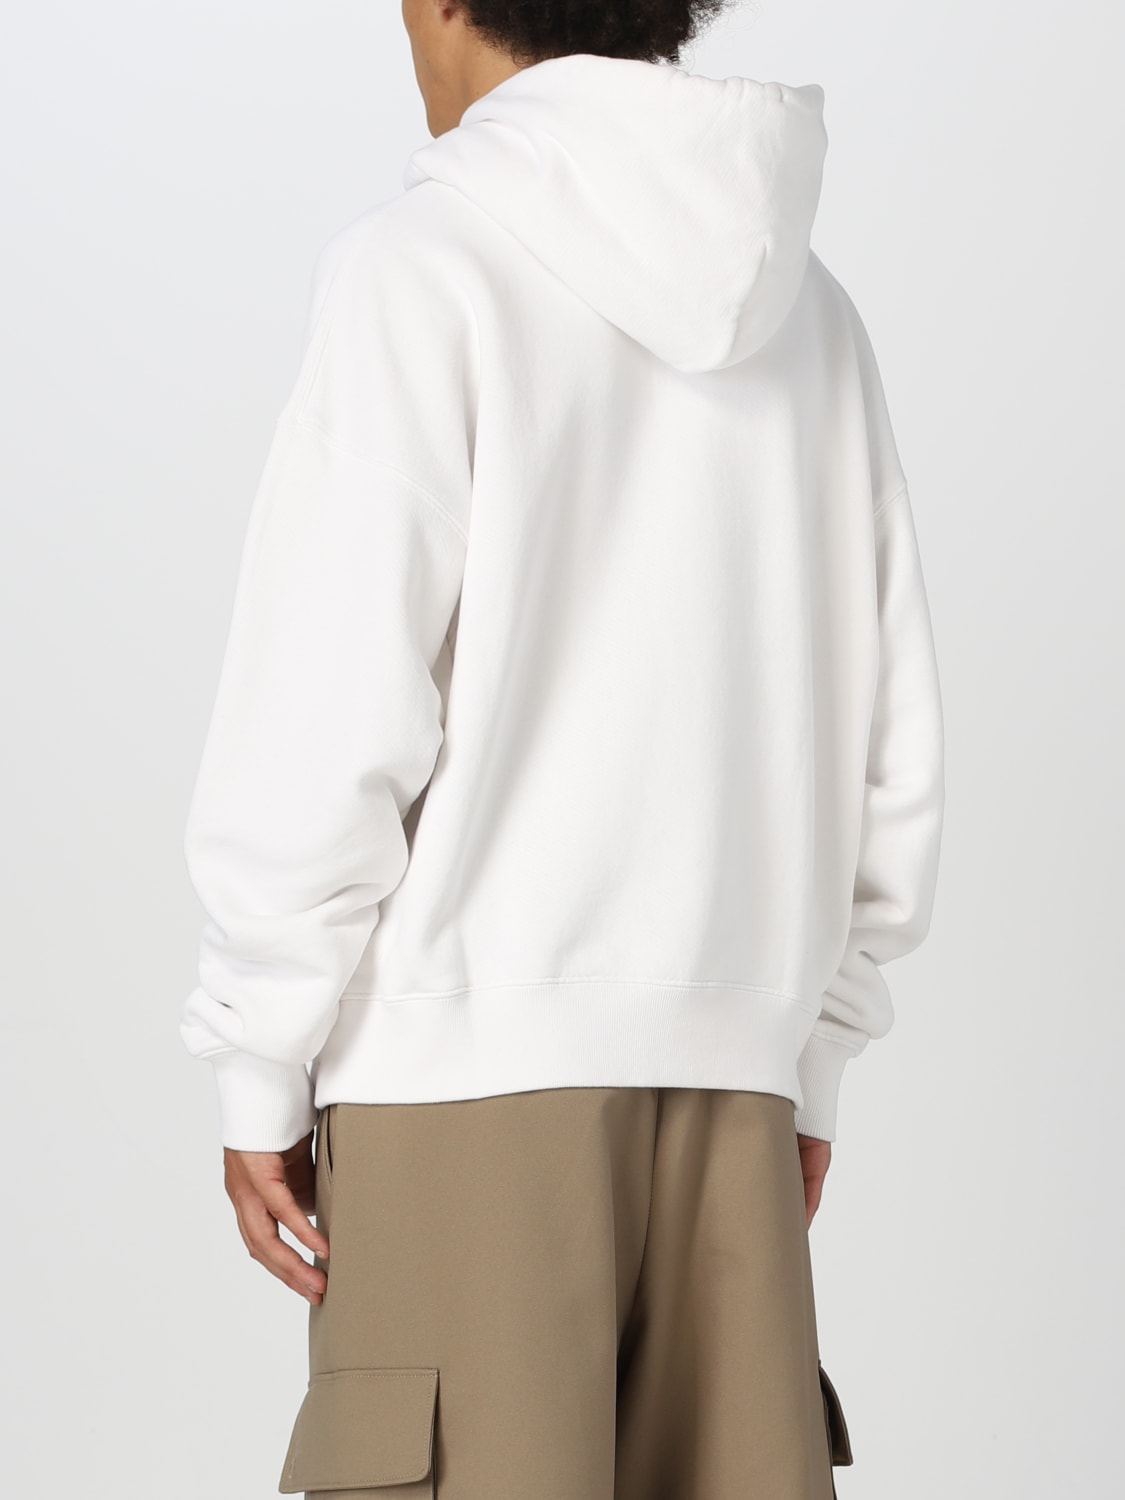 OFF-WHITE: cotton sweatshirt - Black  Off-White sweatshirt  OMBB085F23FLE010 online at